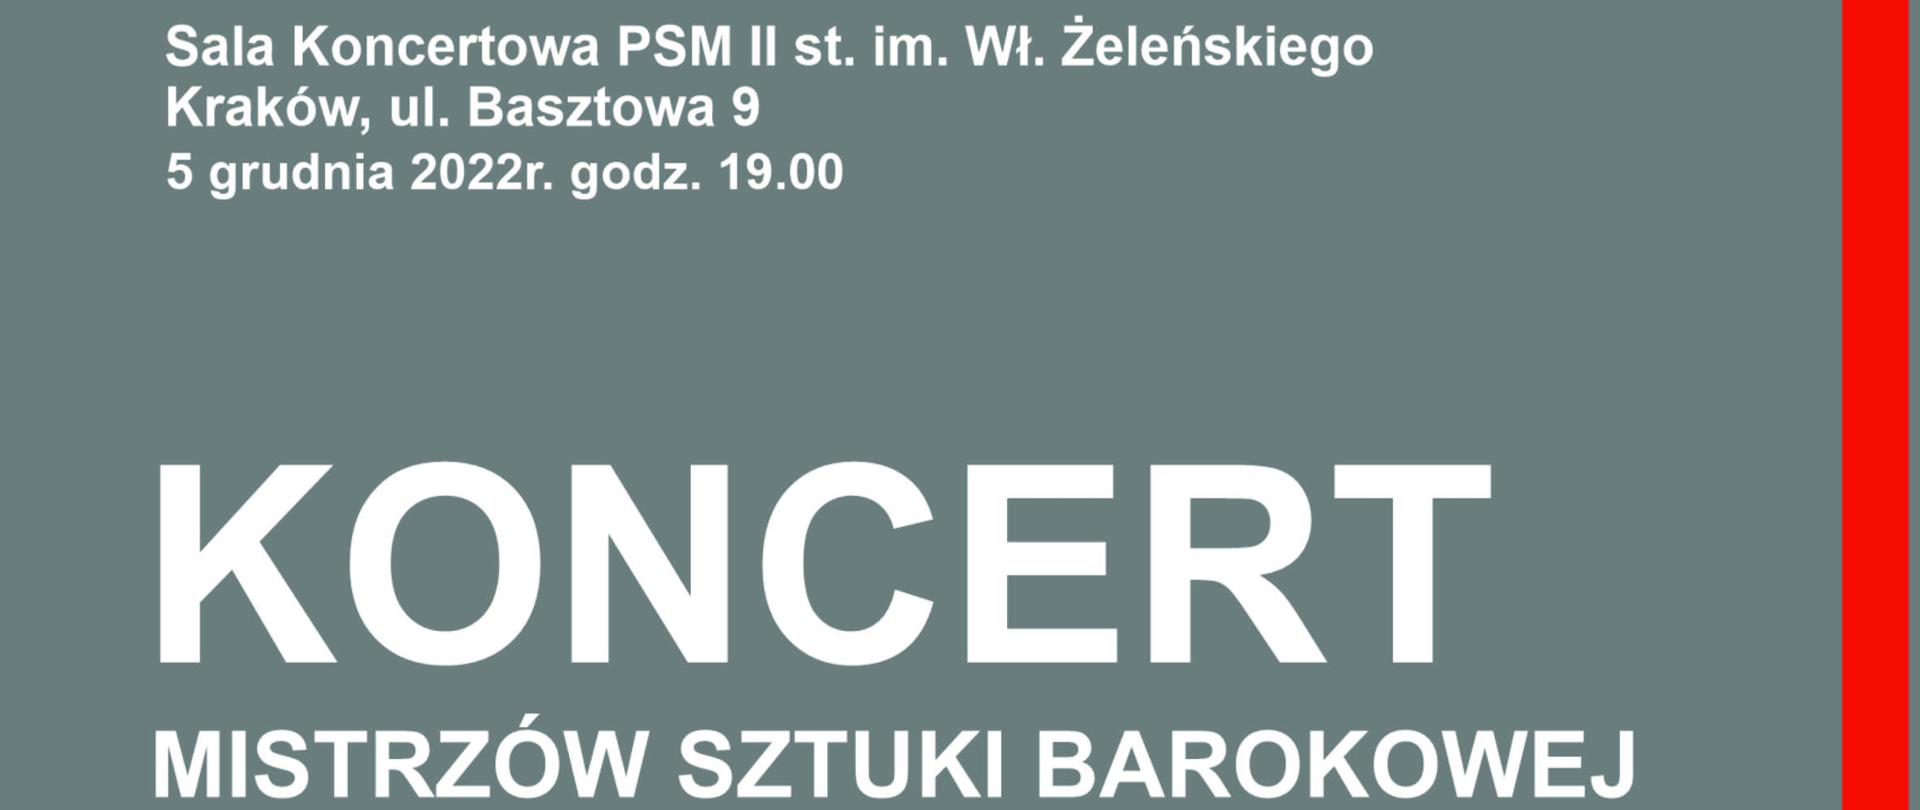 plakat na szarym tle Koncert mistrzów sztuki barokowej 5.12.2022